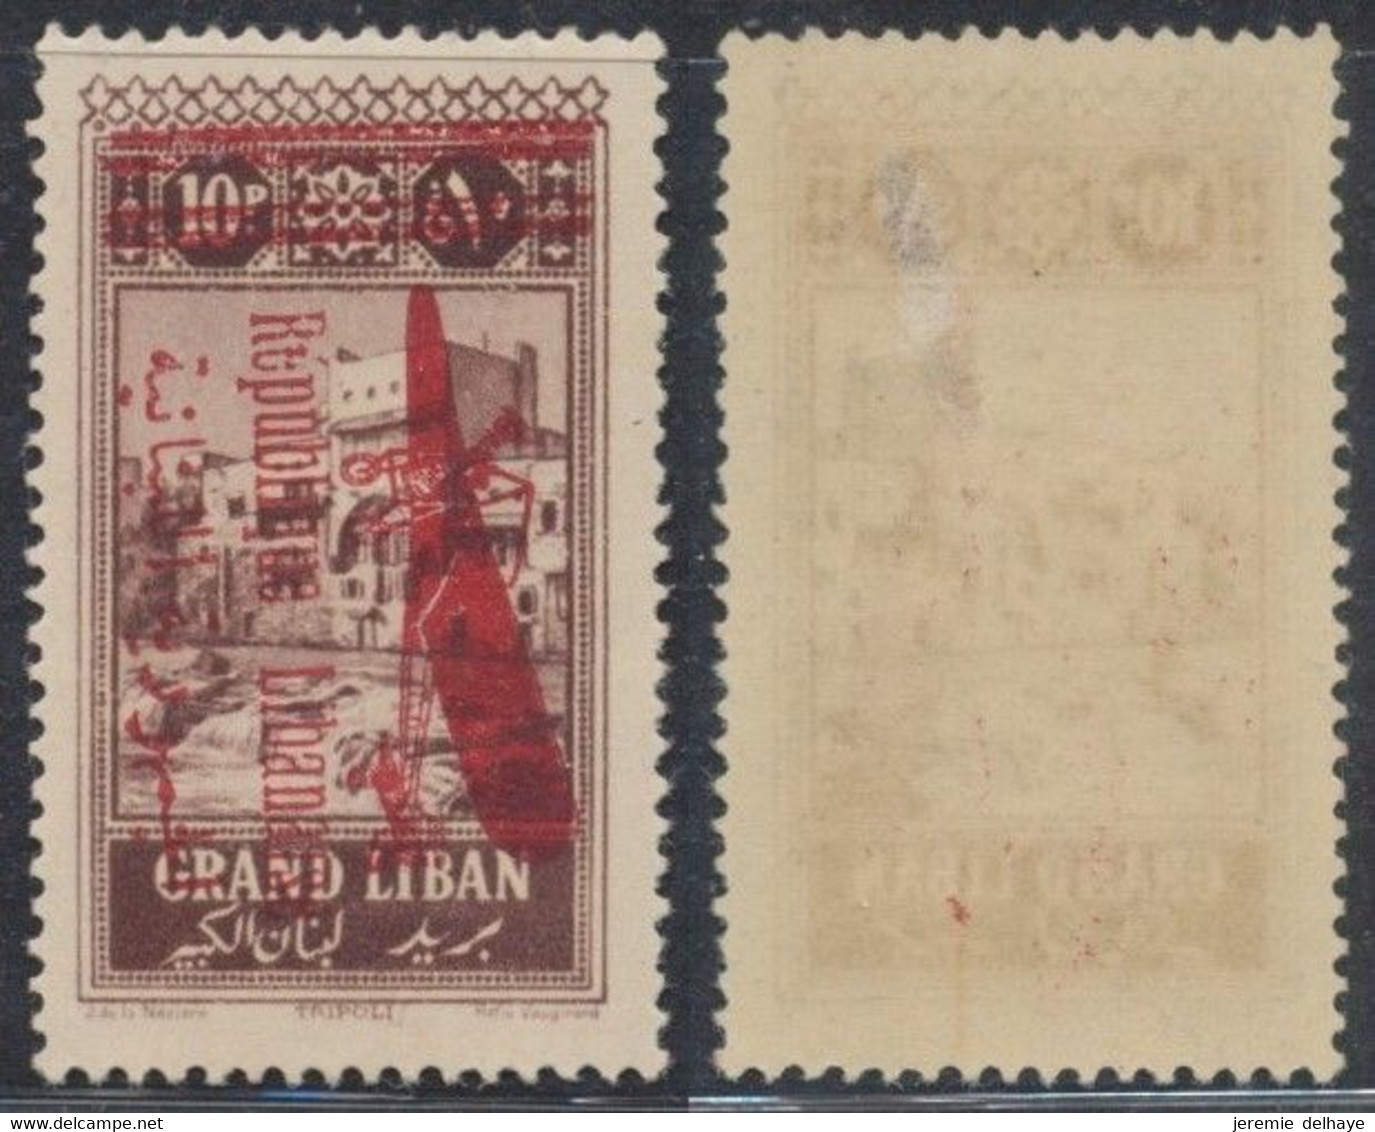 Grand Liban - Poste Aérienne (PA) : Yv N°35b * Neuf Charniérés (MH / Aminci) / Variété De Surcharge - Lebanon